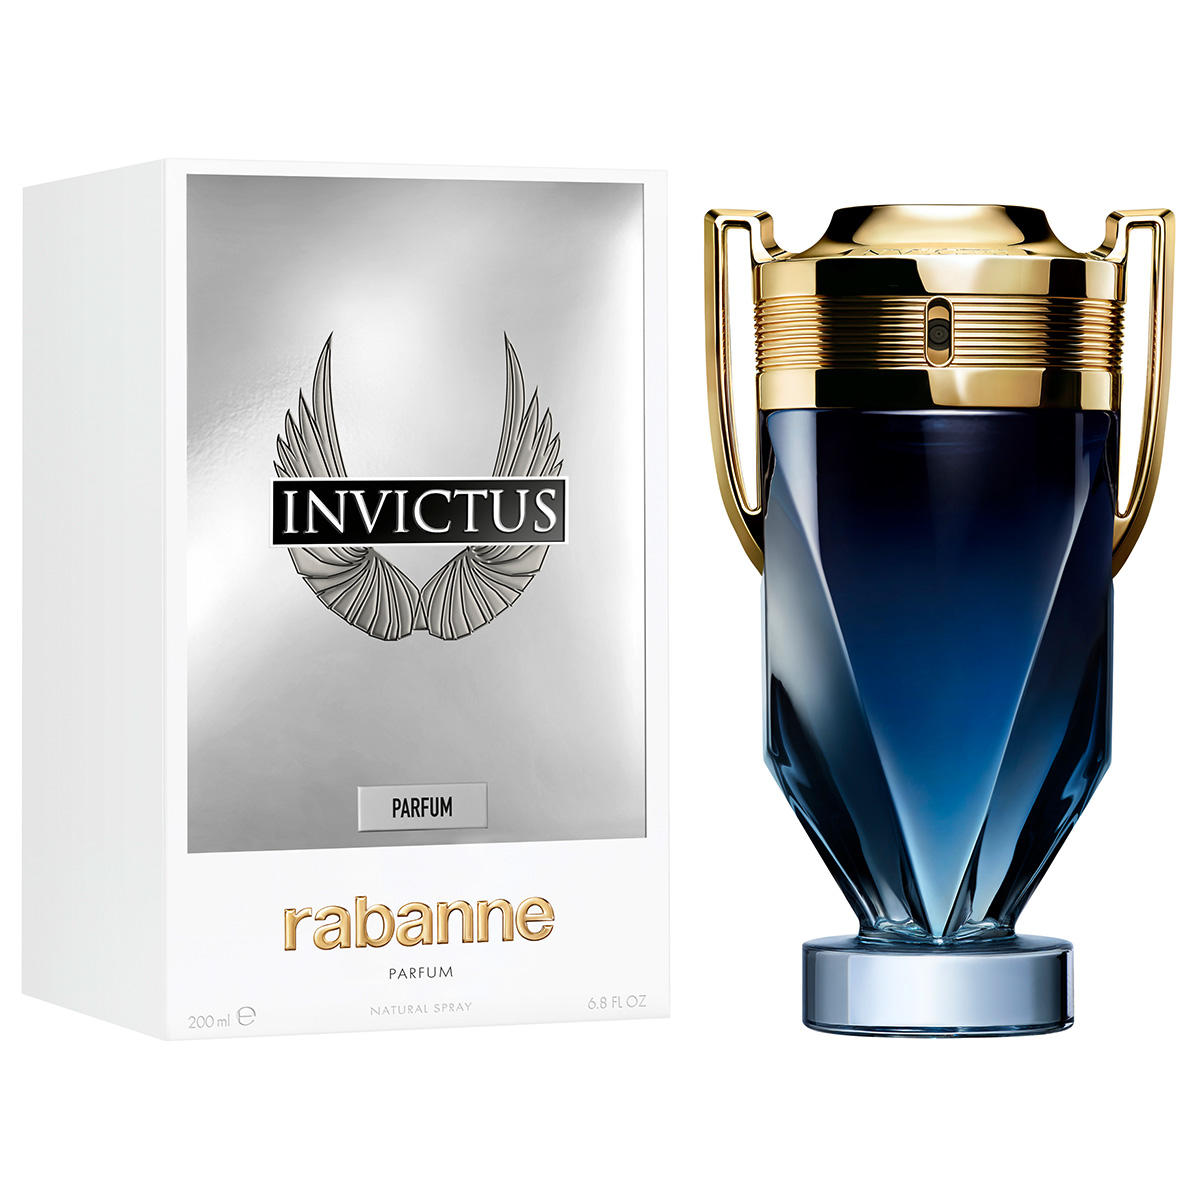 rabanne Invictus Parfum 200 ml - 2